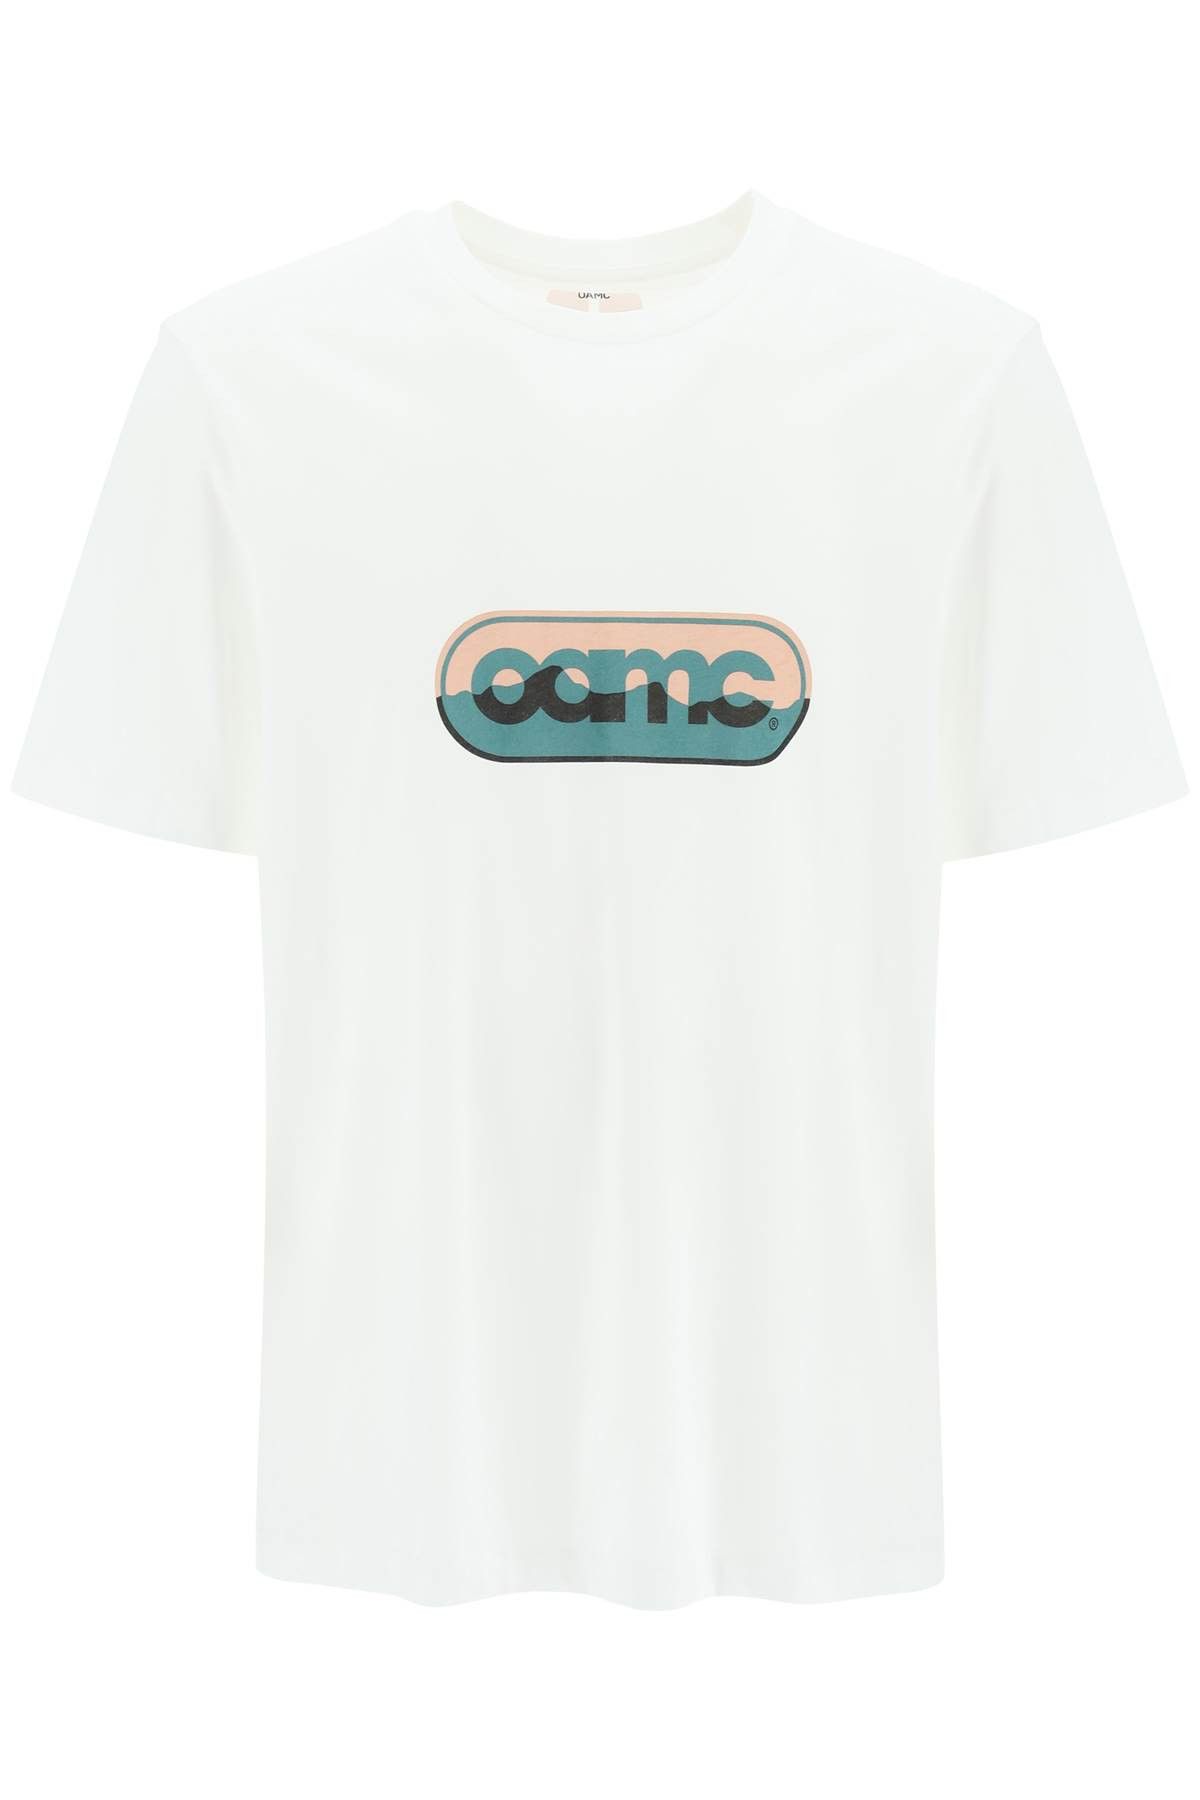 Oamc Oamc logo print t-shirt | Grailed